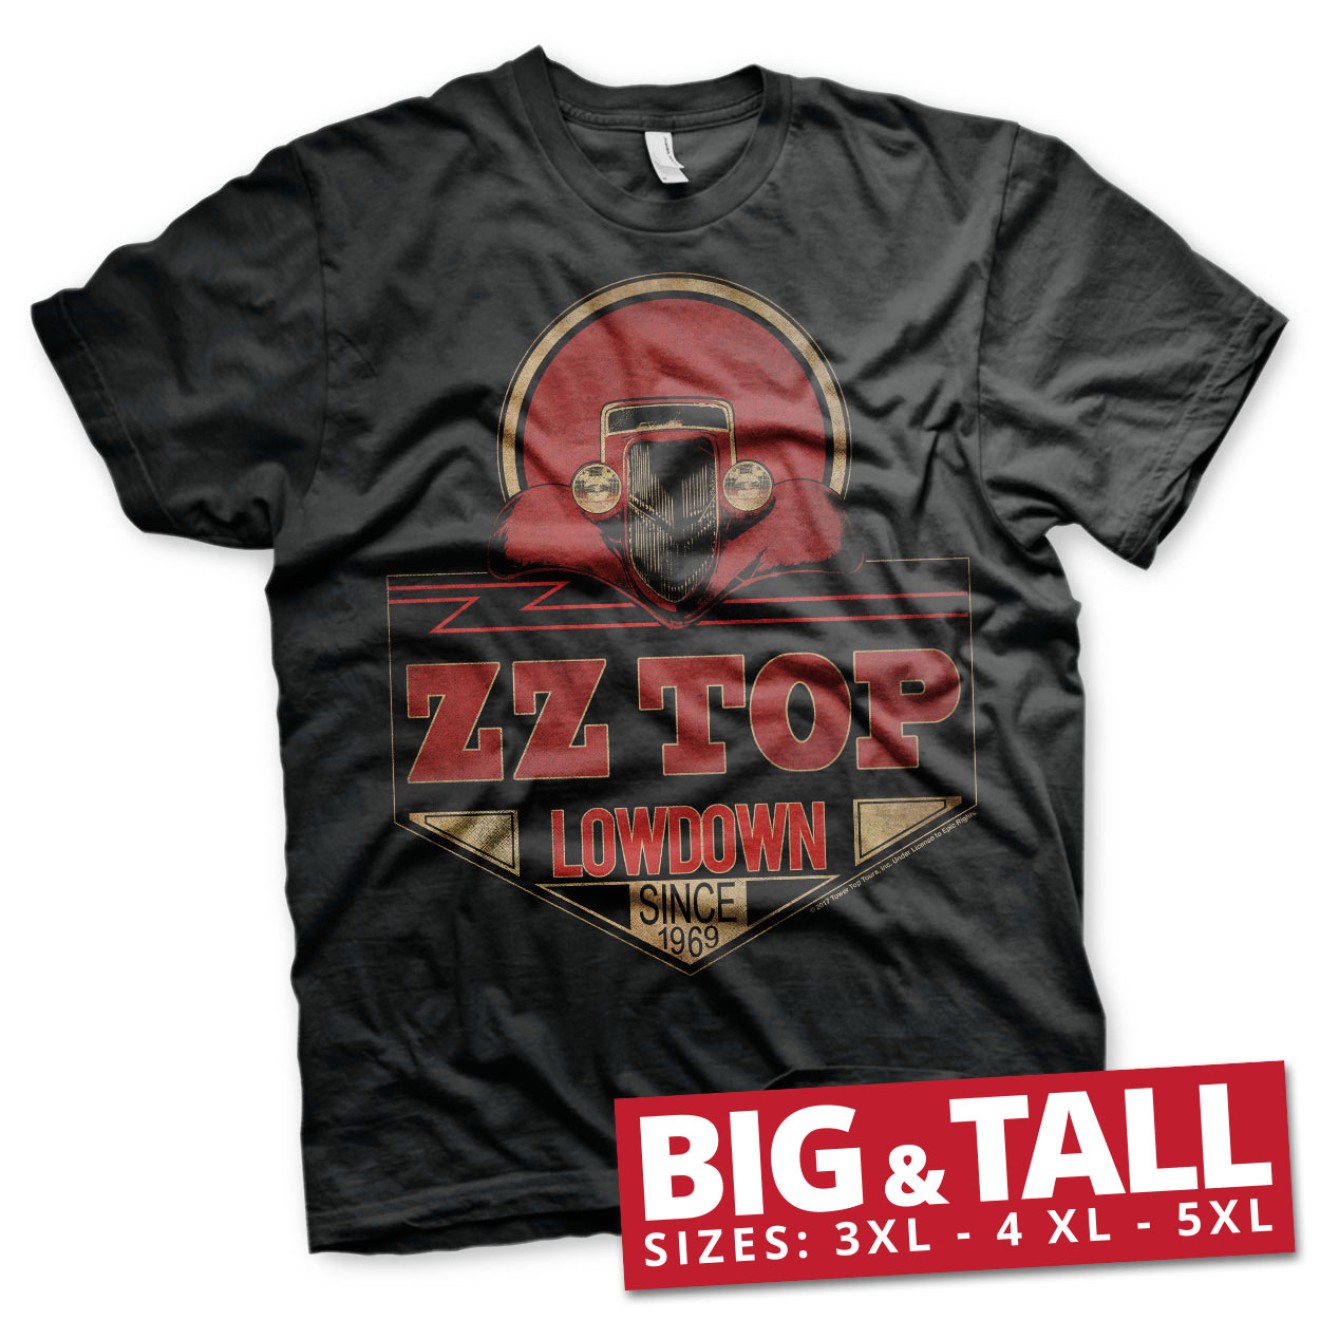 ZZ-Top - Lowdown Since 1969 Big & Tall T-Shirt Große Größen